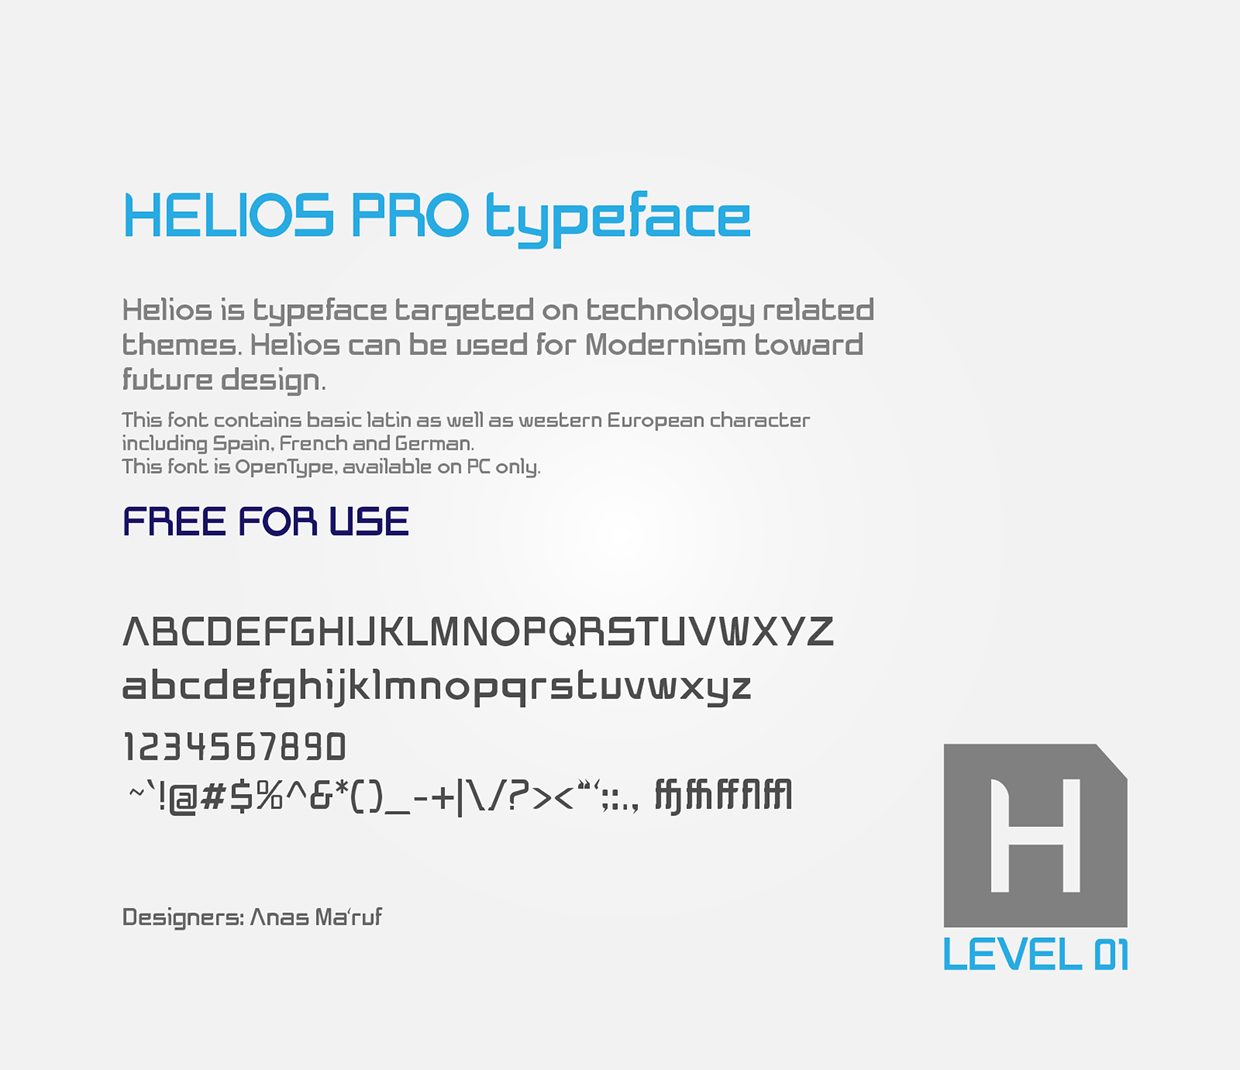 Helios Pro font